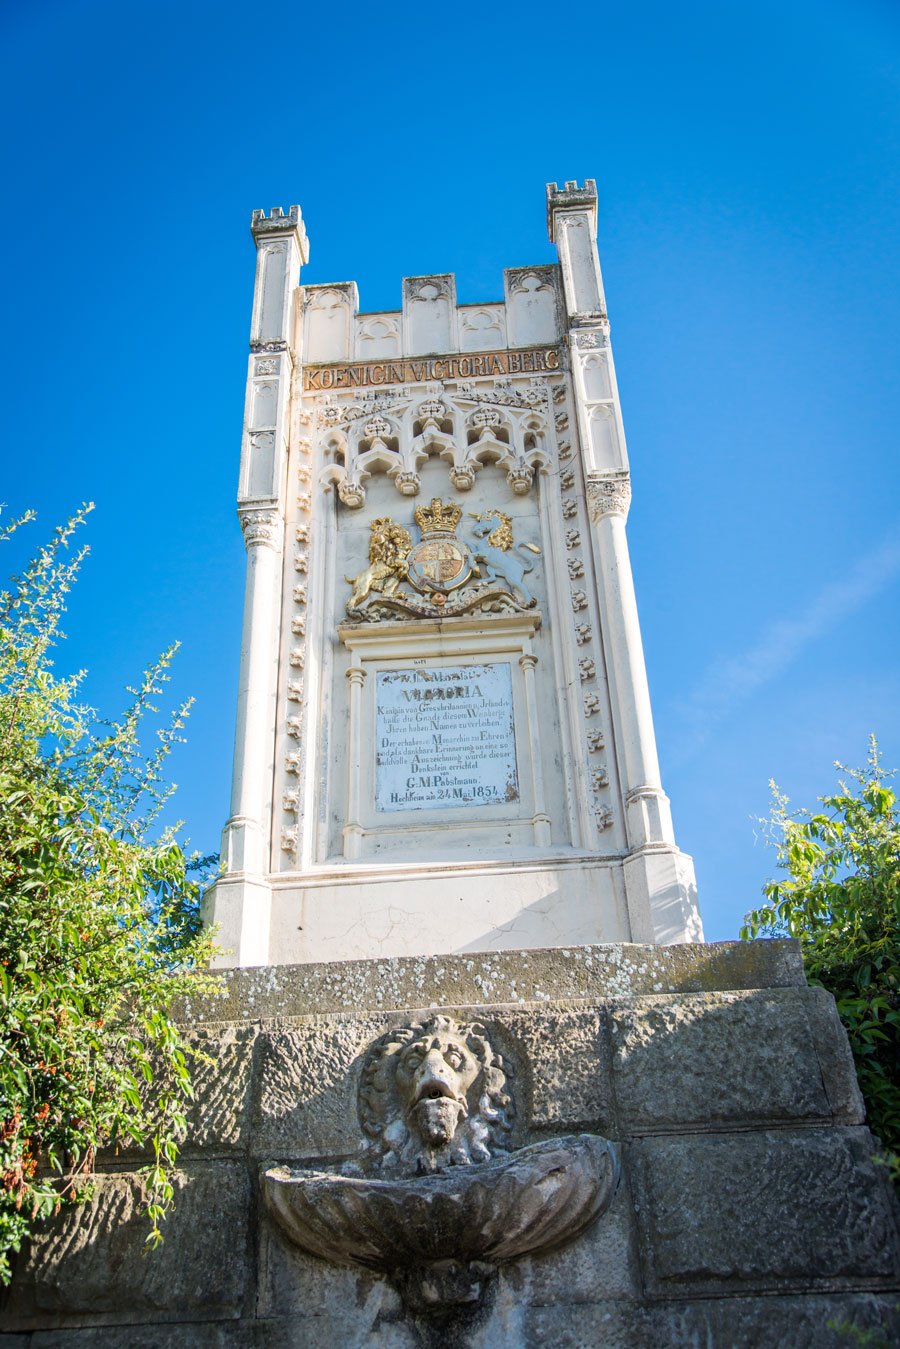 Königin Victoria Denkmal in den Weinbergen.